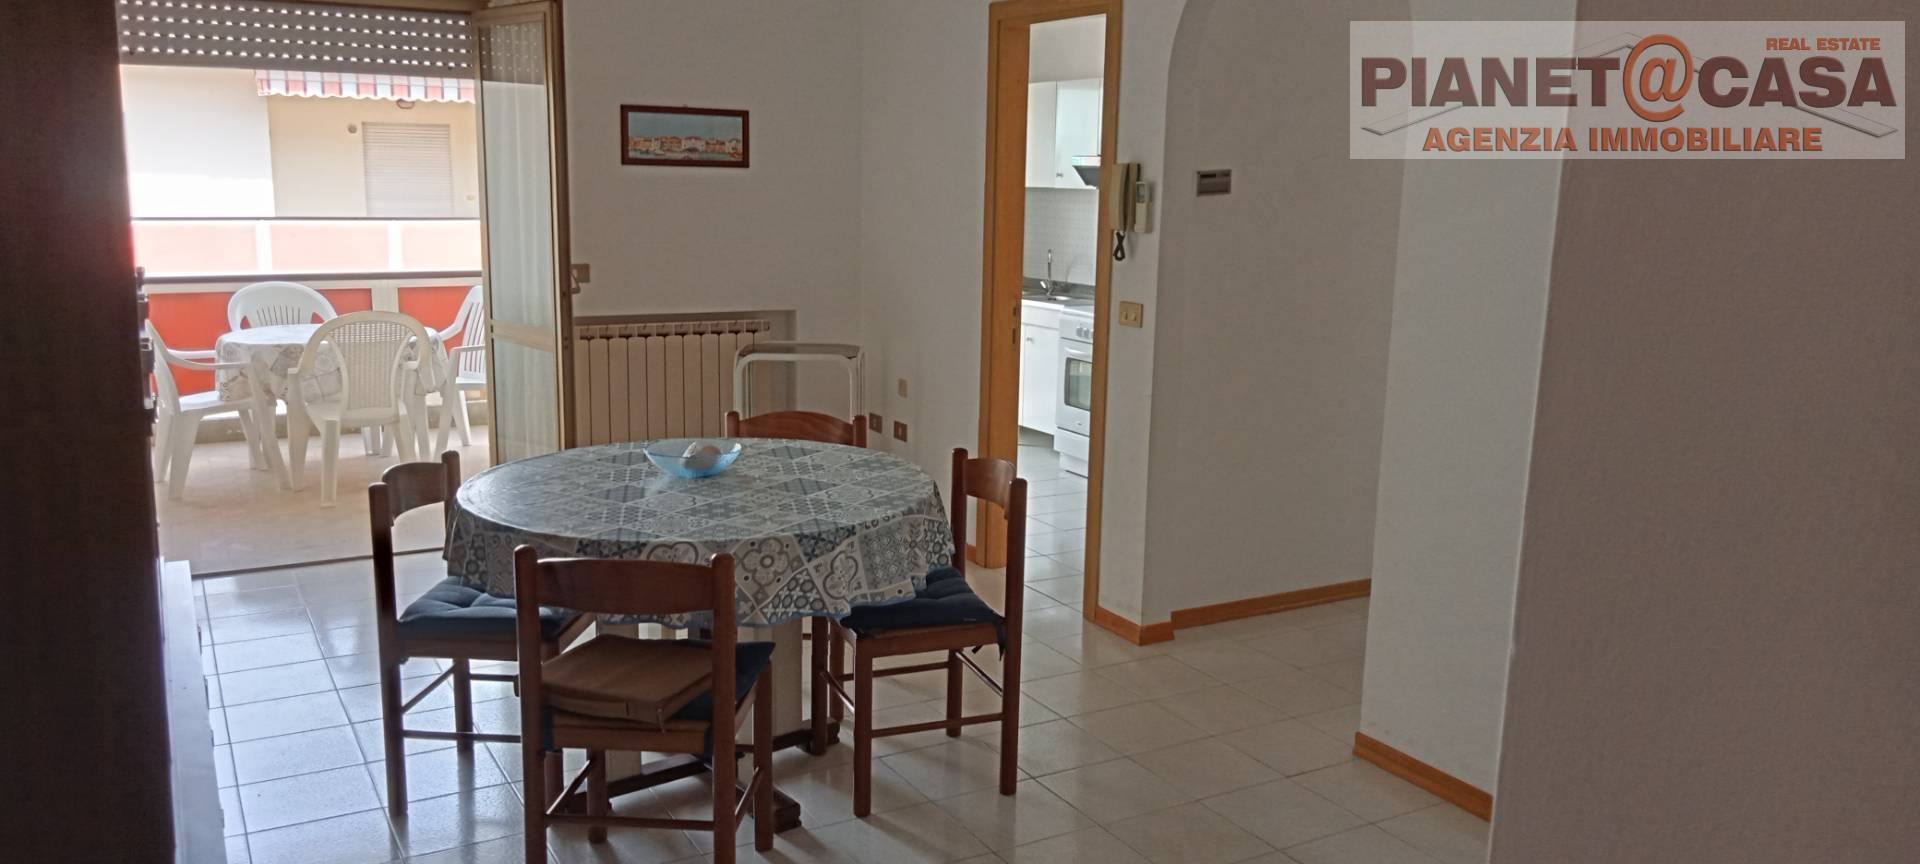 Appartamento in vendita a Martinsicuro, 3 locali, zona Località: VILLAROSA, prezzo € 118.000 | PortaleAgenzieImmobiliari.it